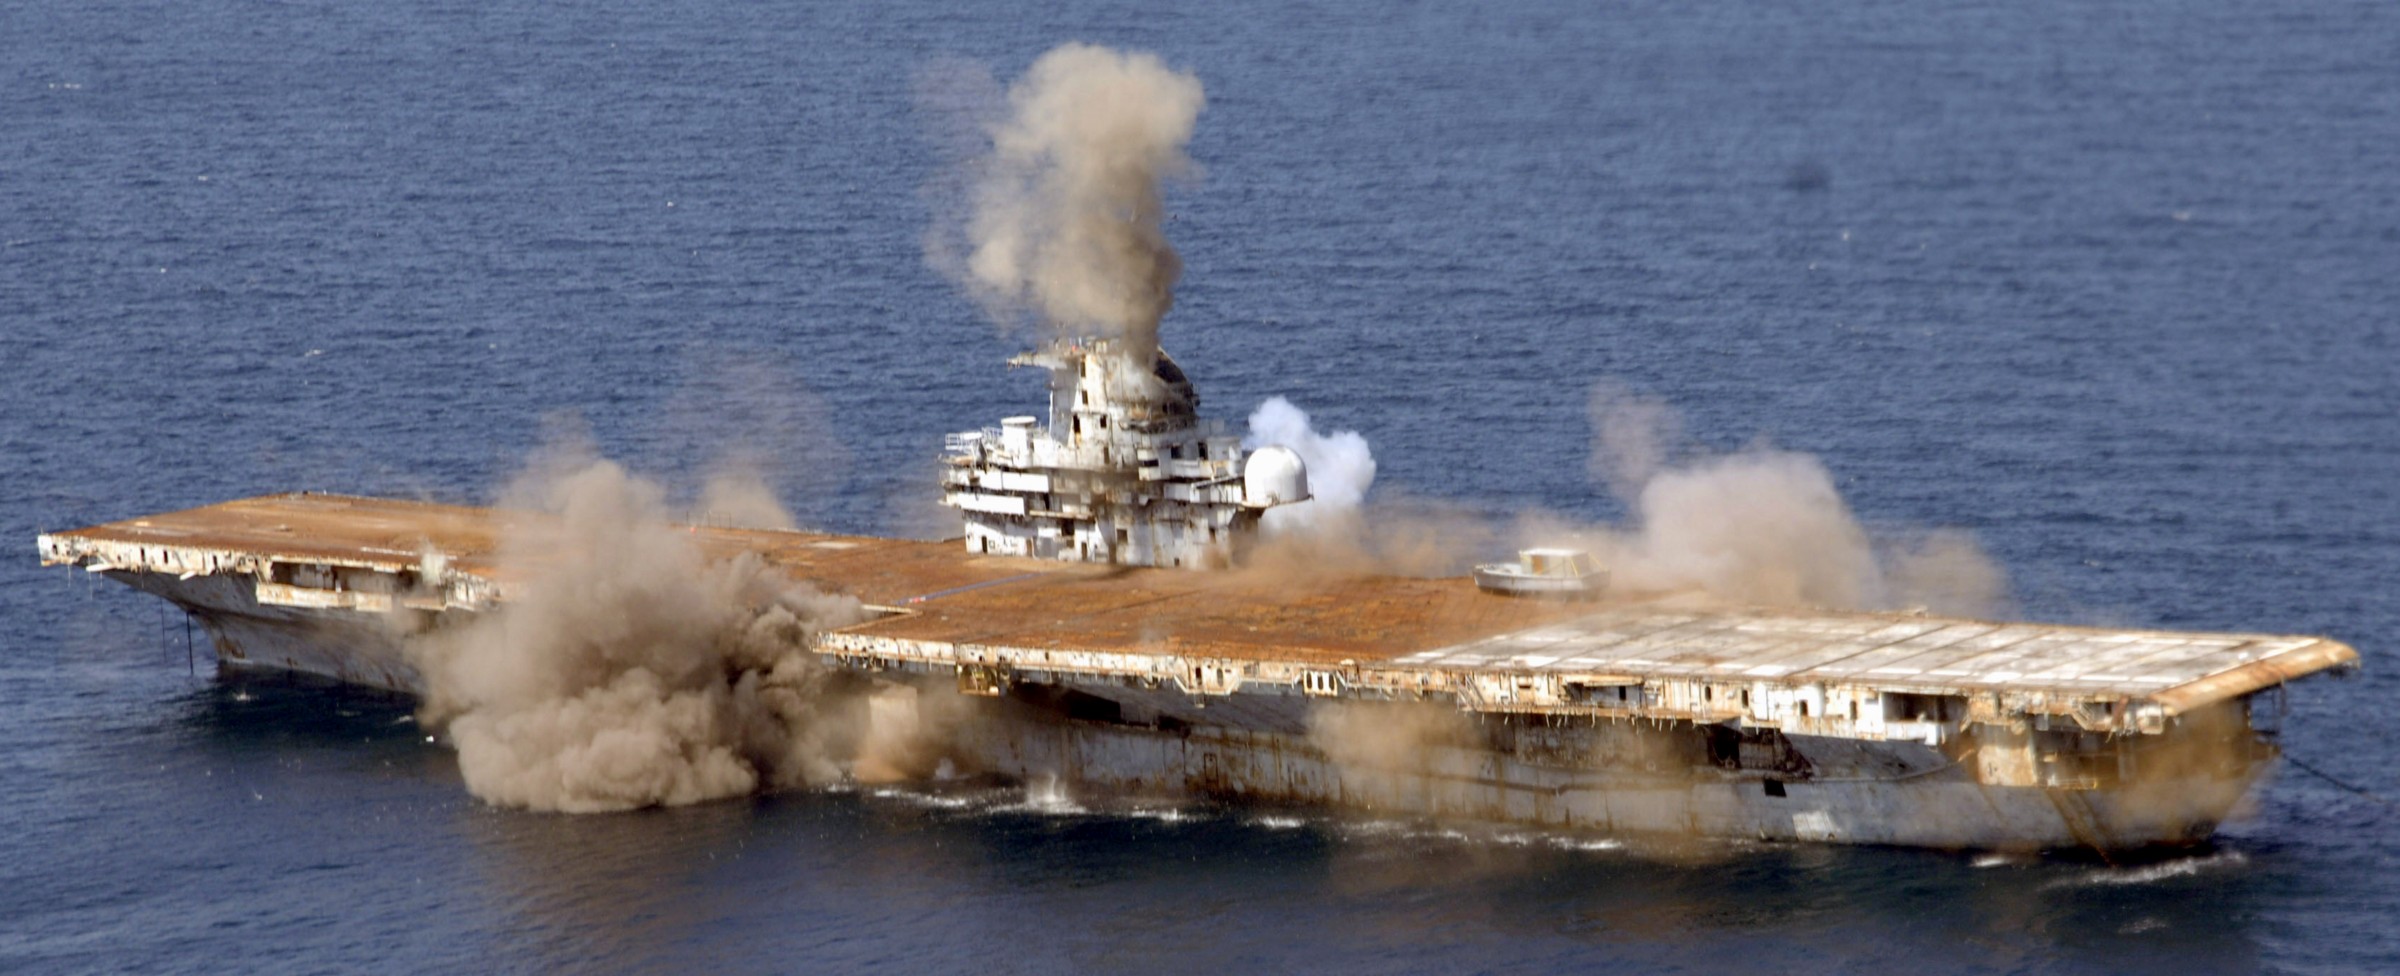 cv-34 uss oriskany essex class aircraft carrier us navy sinking artificial reef off florida 119